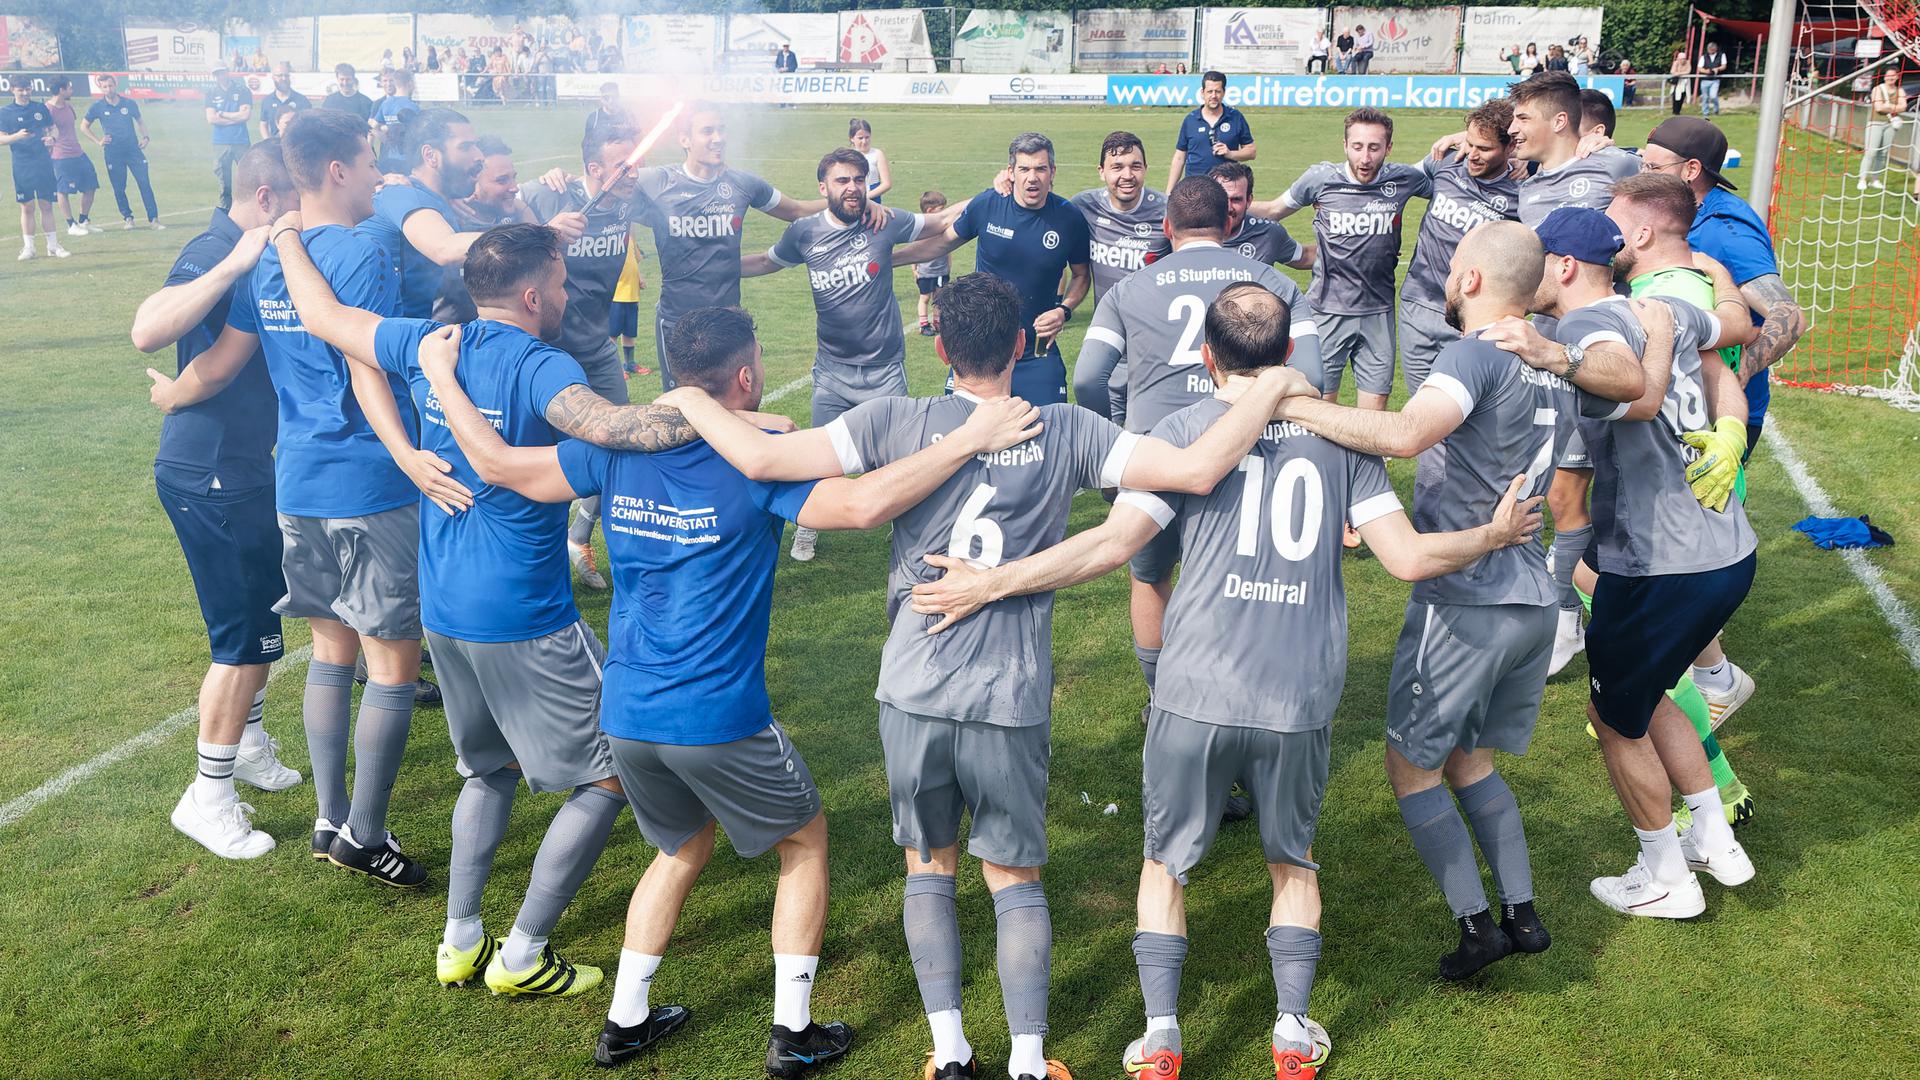 Die Kreisligafußballer der SG Stupferich feiern den Aufstieg.